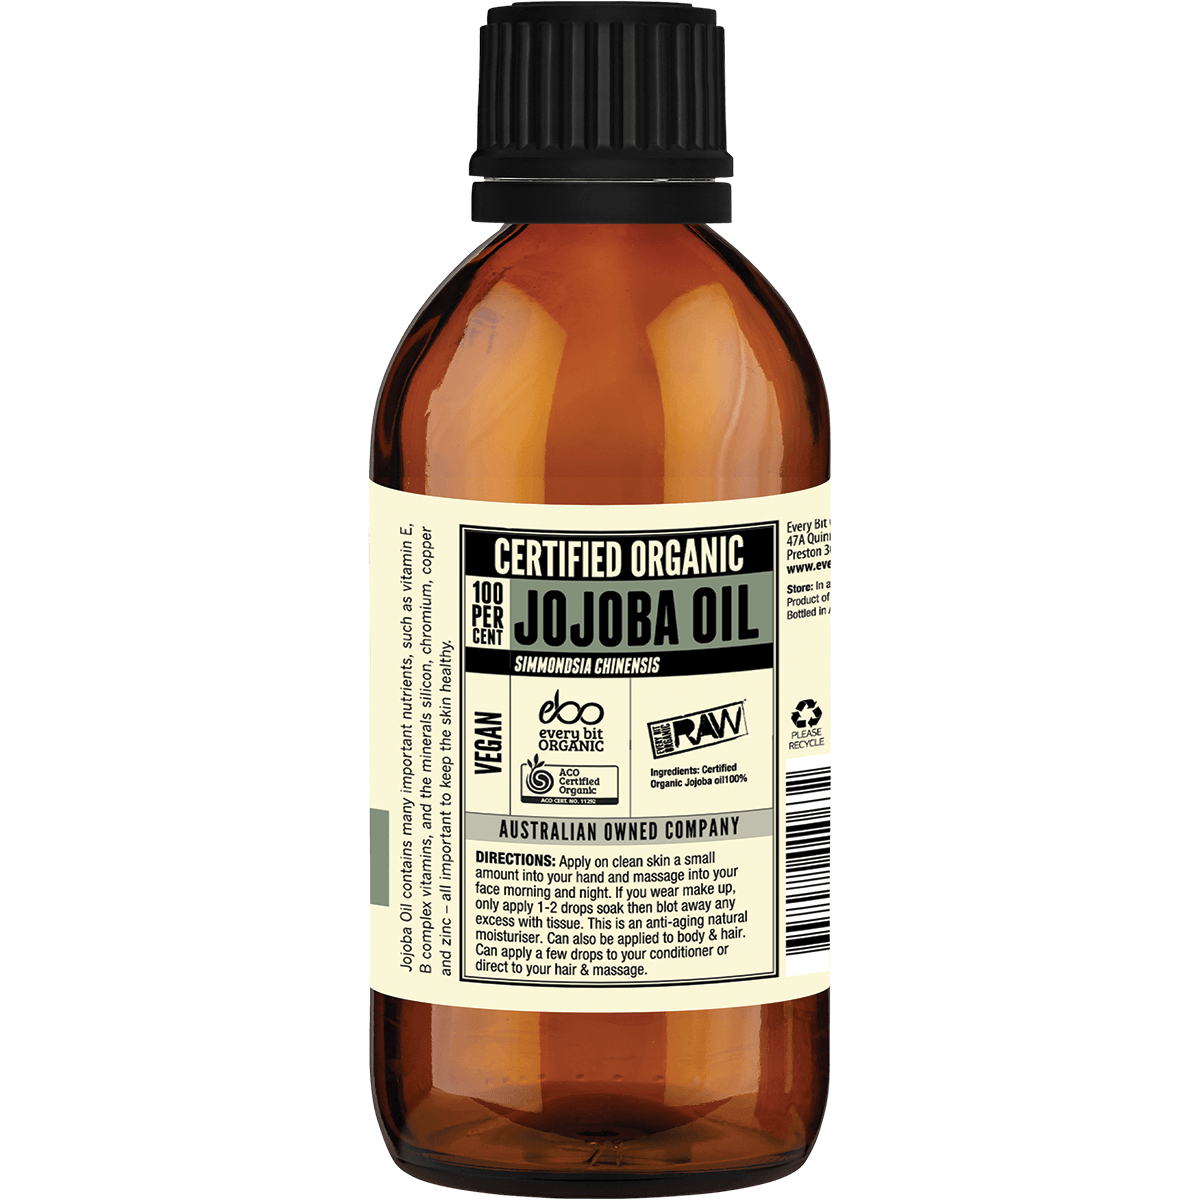 Every Bit Organic Raw Jojoba Oil 200ml - QVM Vitamins™